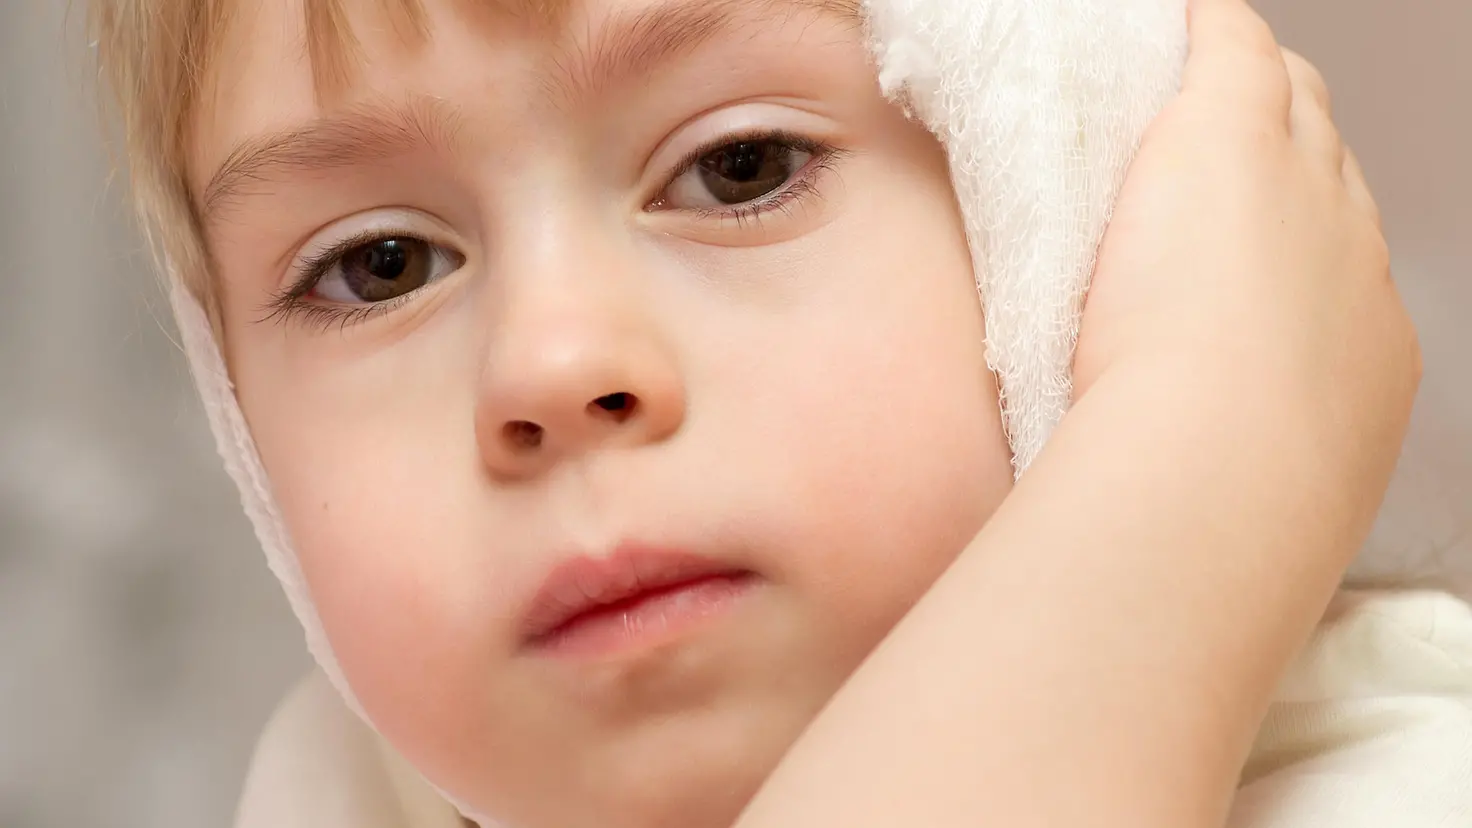 Zu sehen ist ein Kind mit einem Verband am Ohr